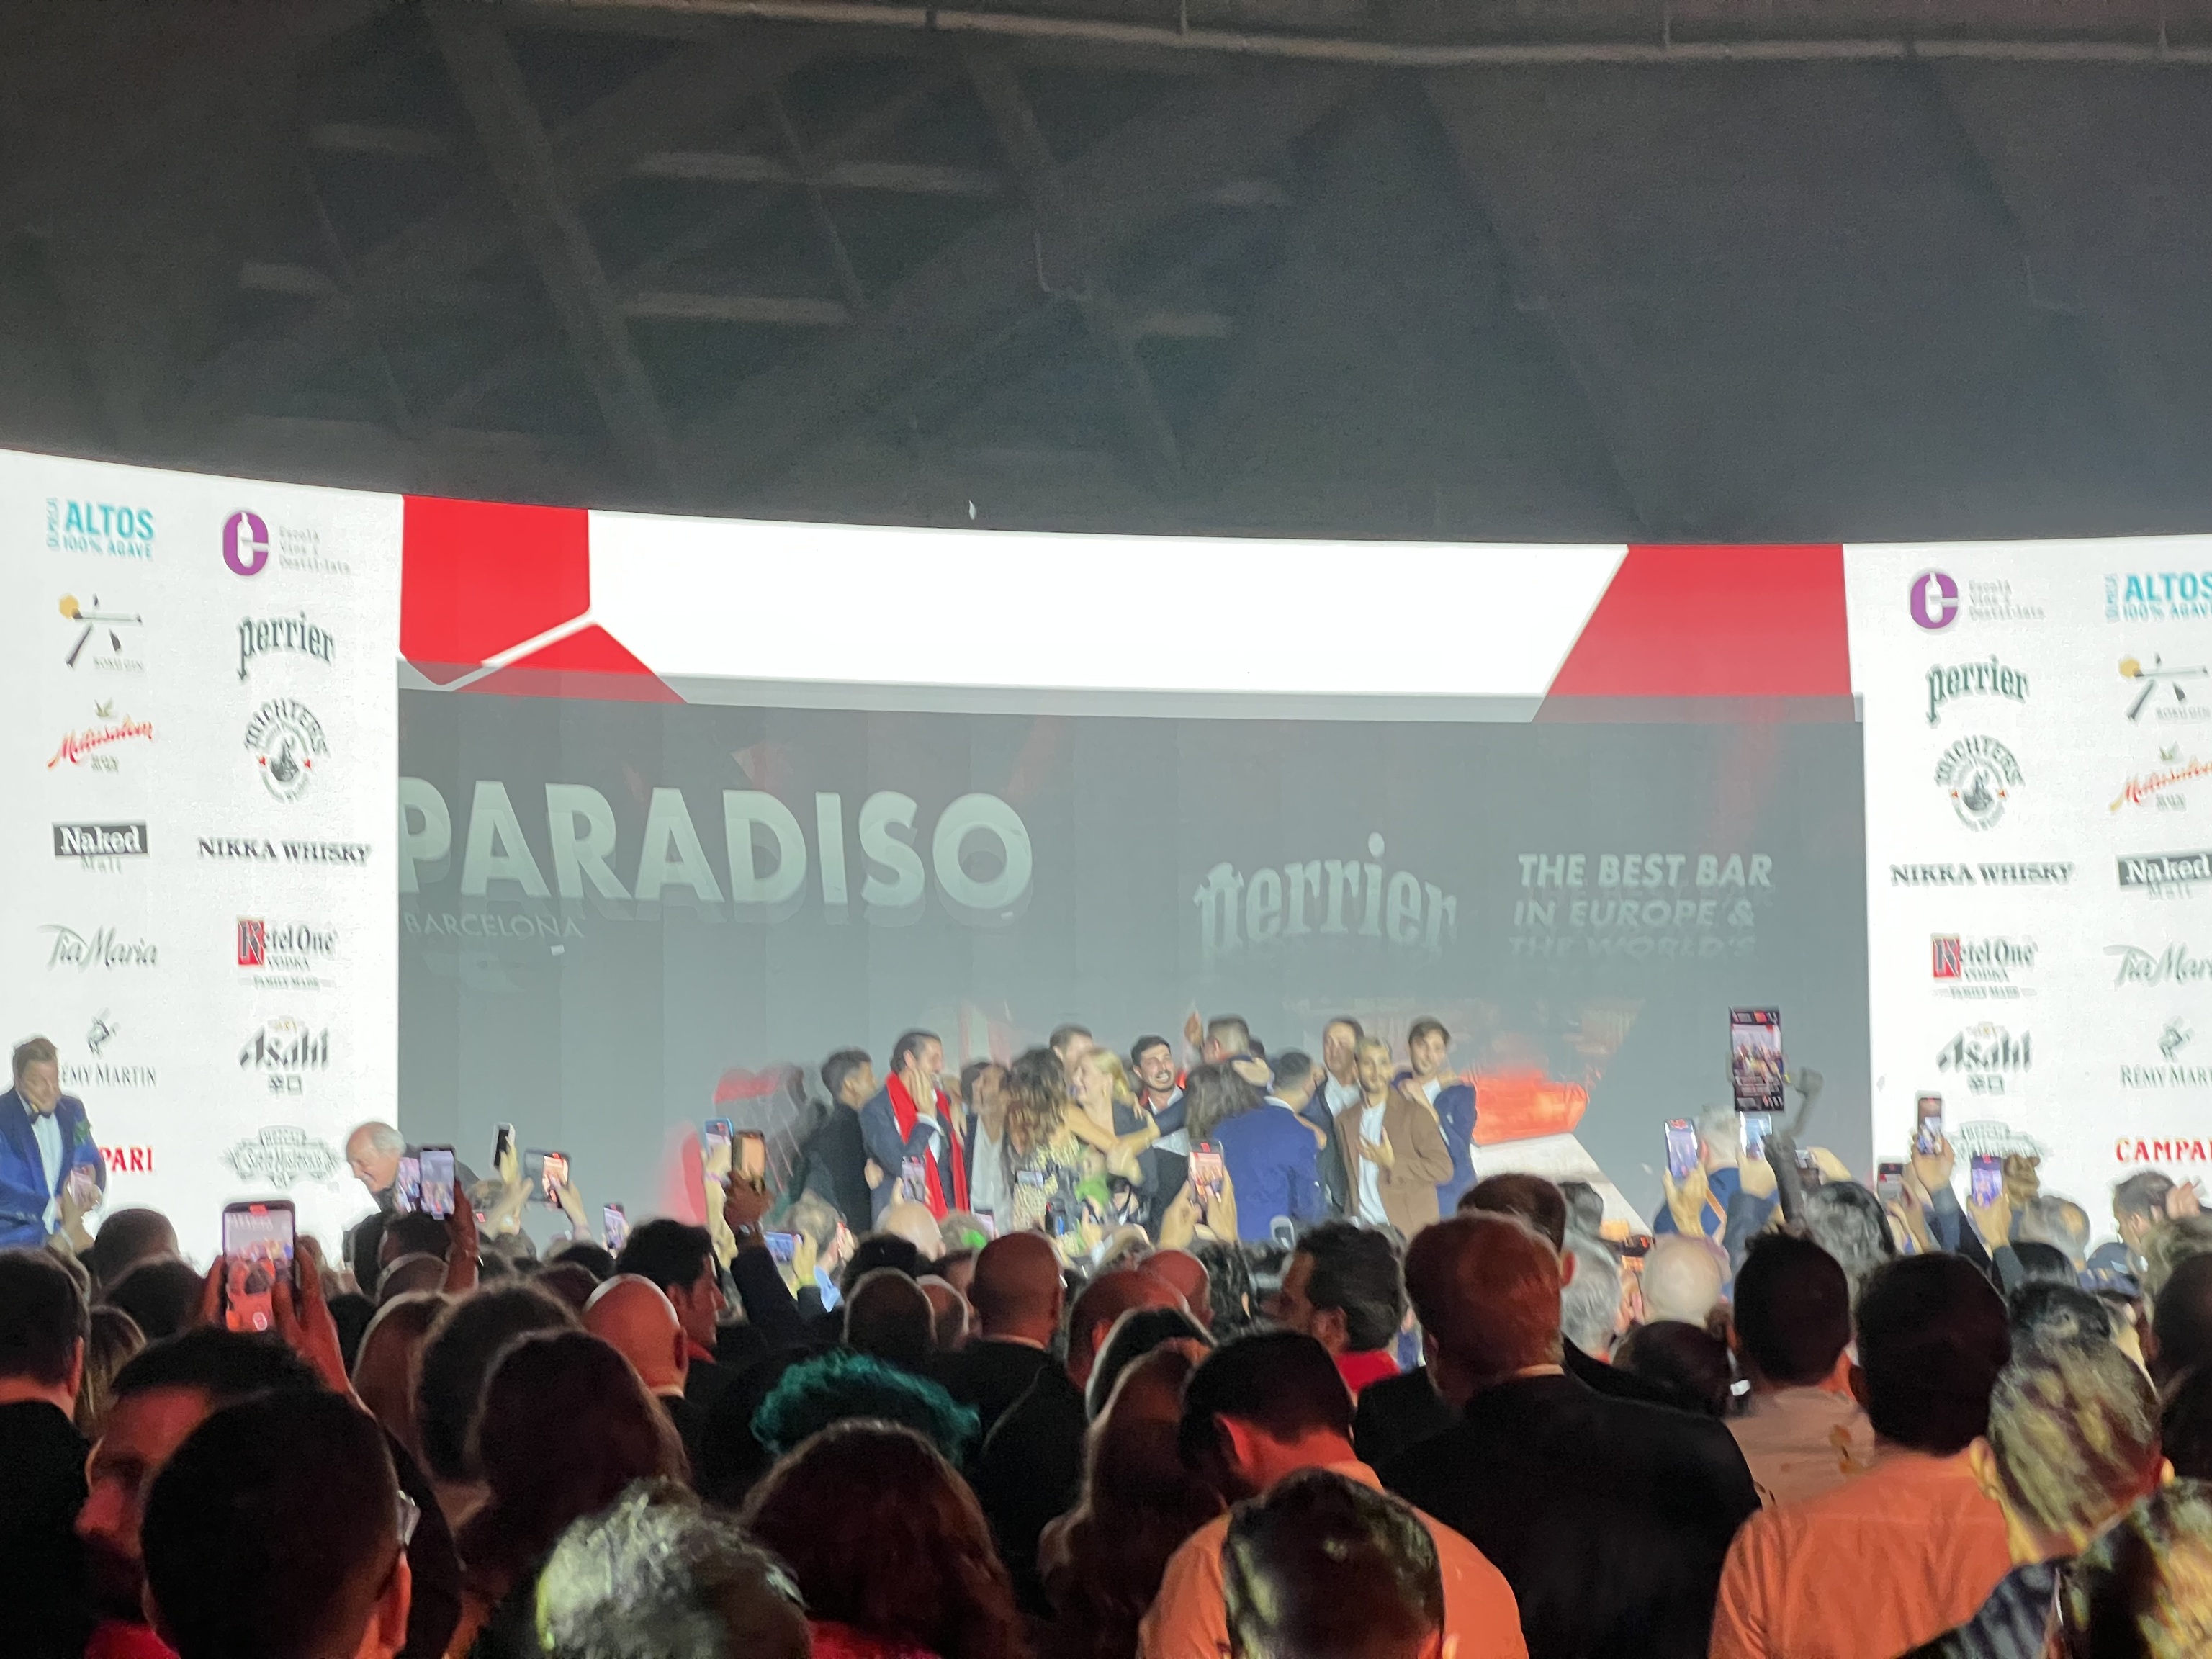 El momento en que los ganadores de Paradiso Barcelona subieron a recibir su premio al mejor bar del mundo, según los 50 mejores bares.